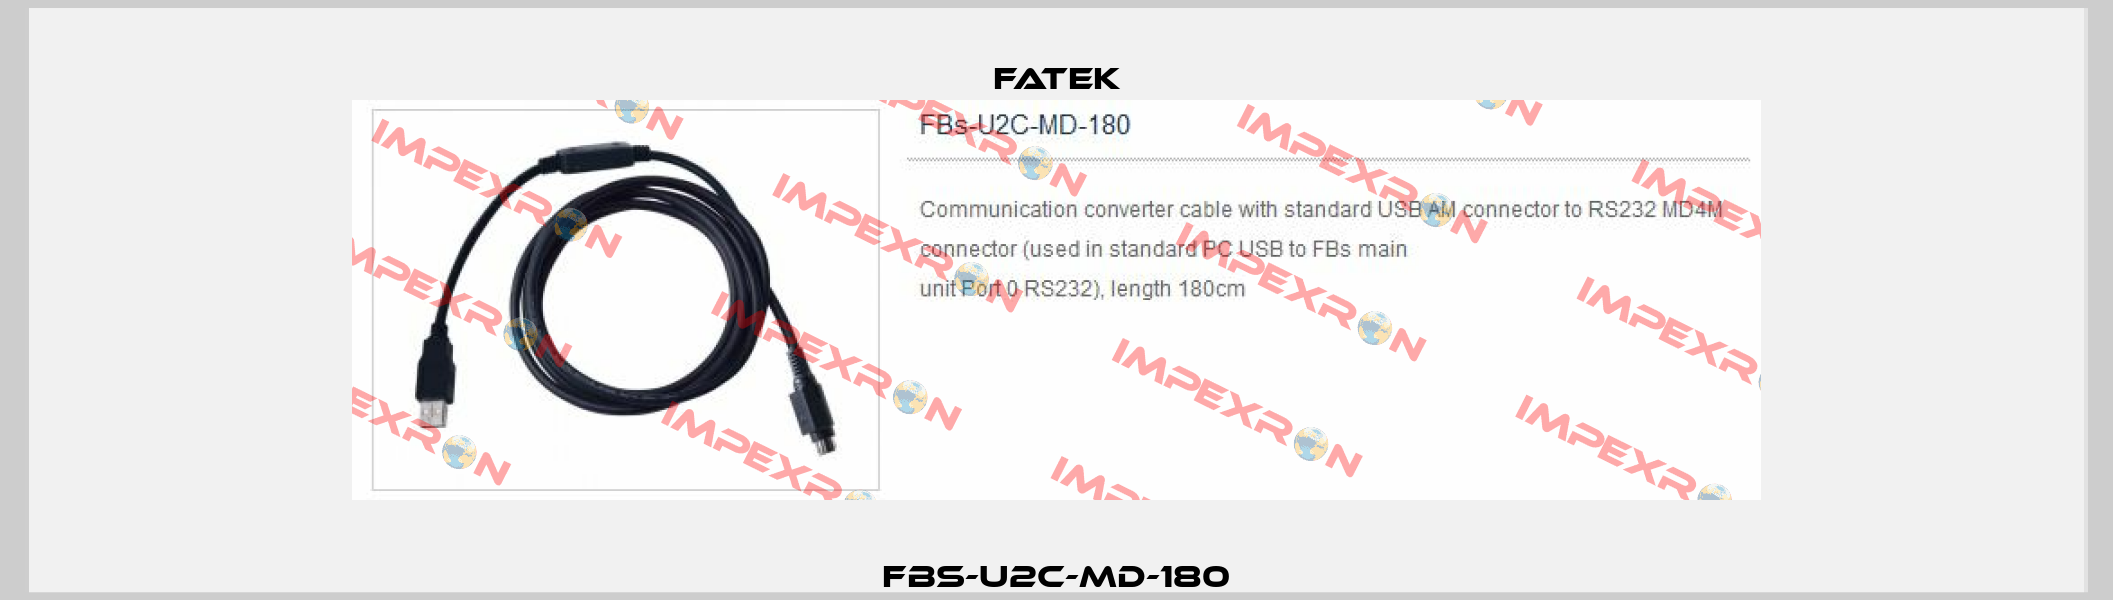 FBS-U2C-MD-180 Fatek